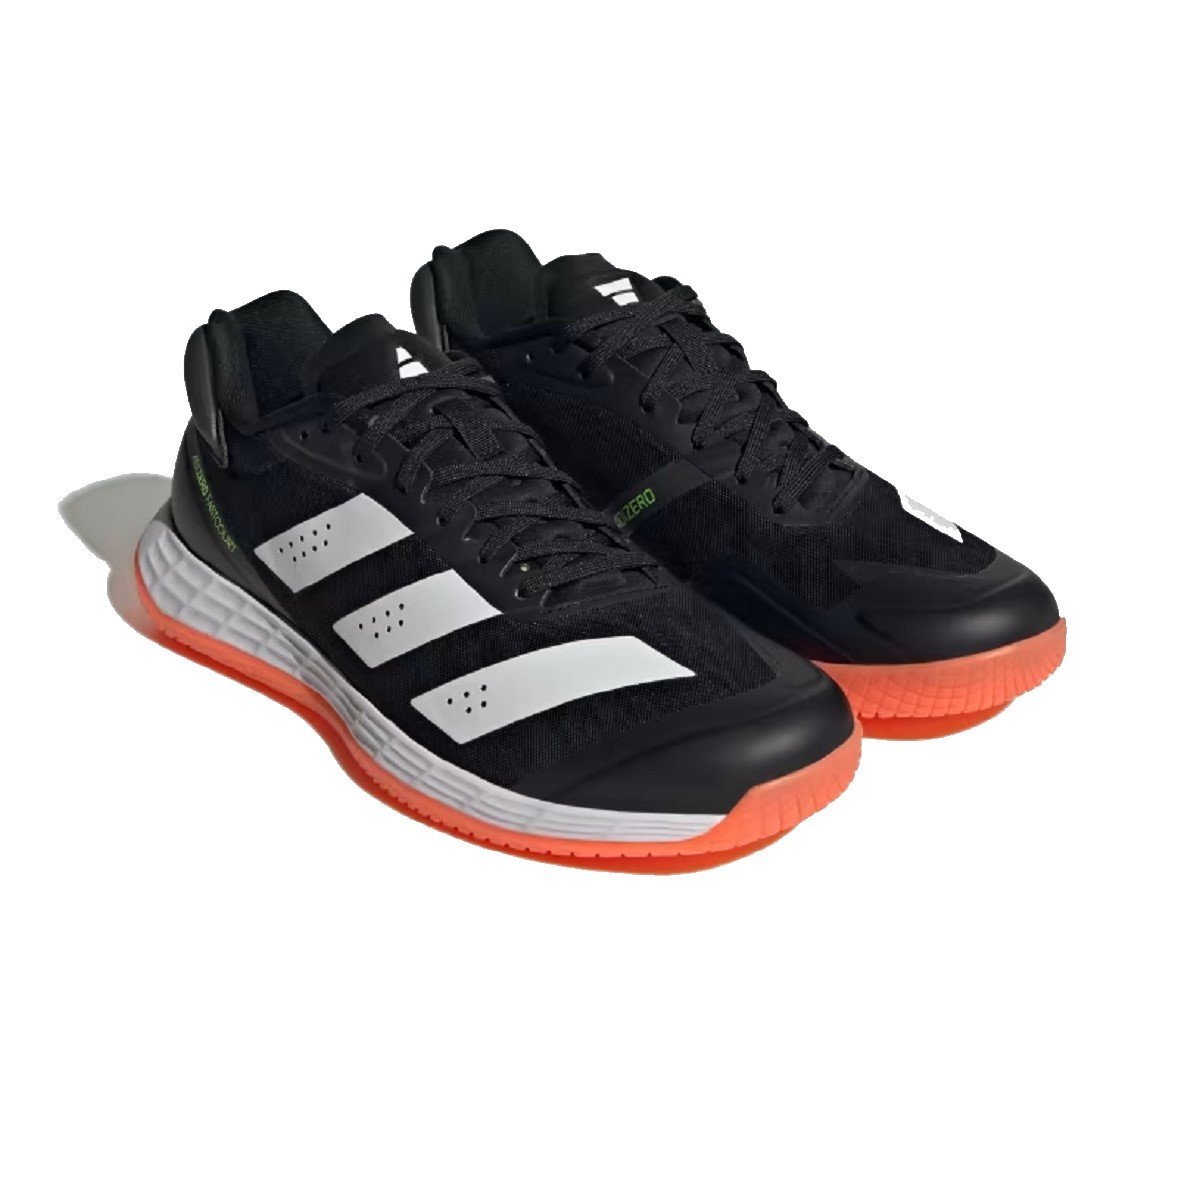 Obuv Adidas Adizero Fastcourt M - čierna/biela/červená